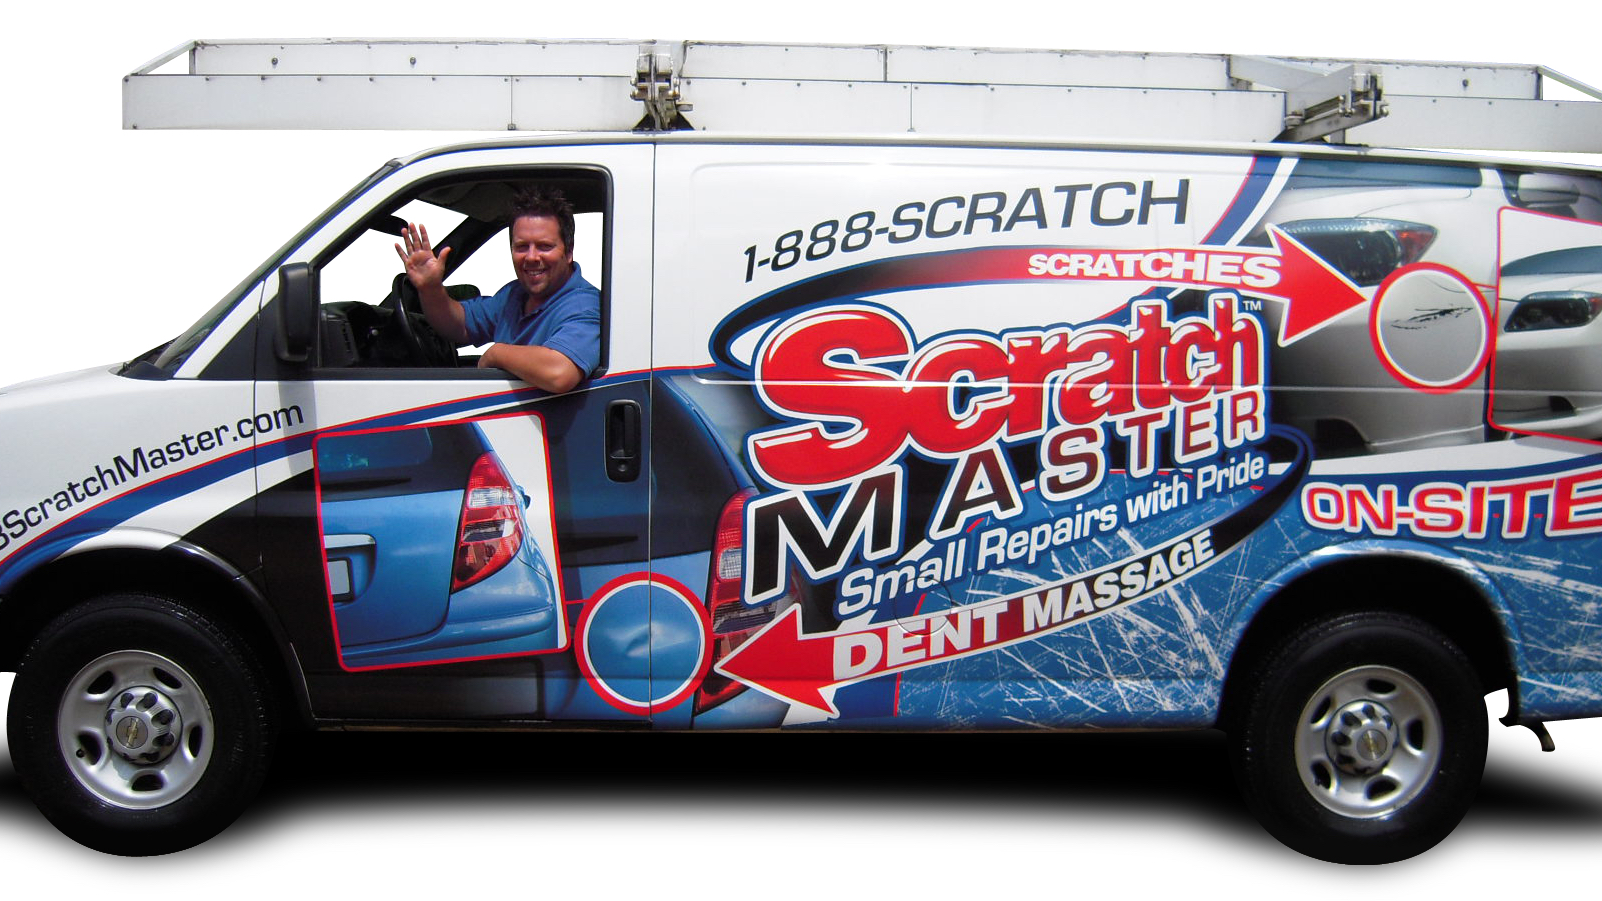 Scratch Master